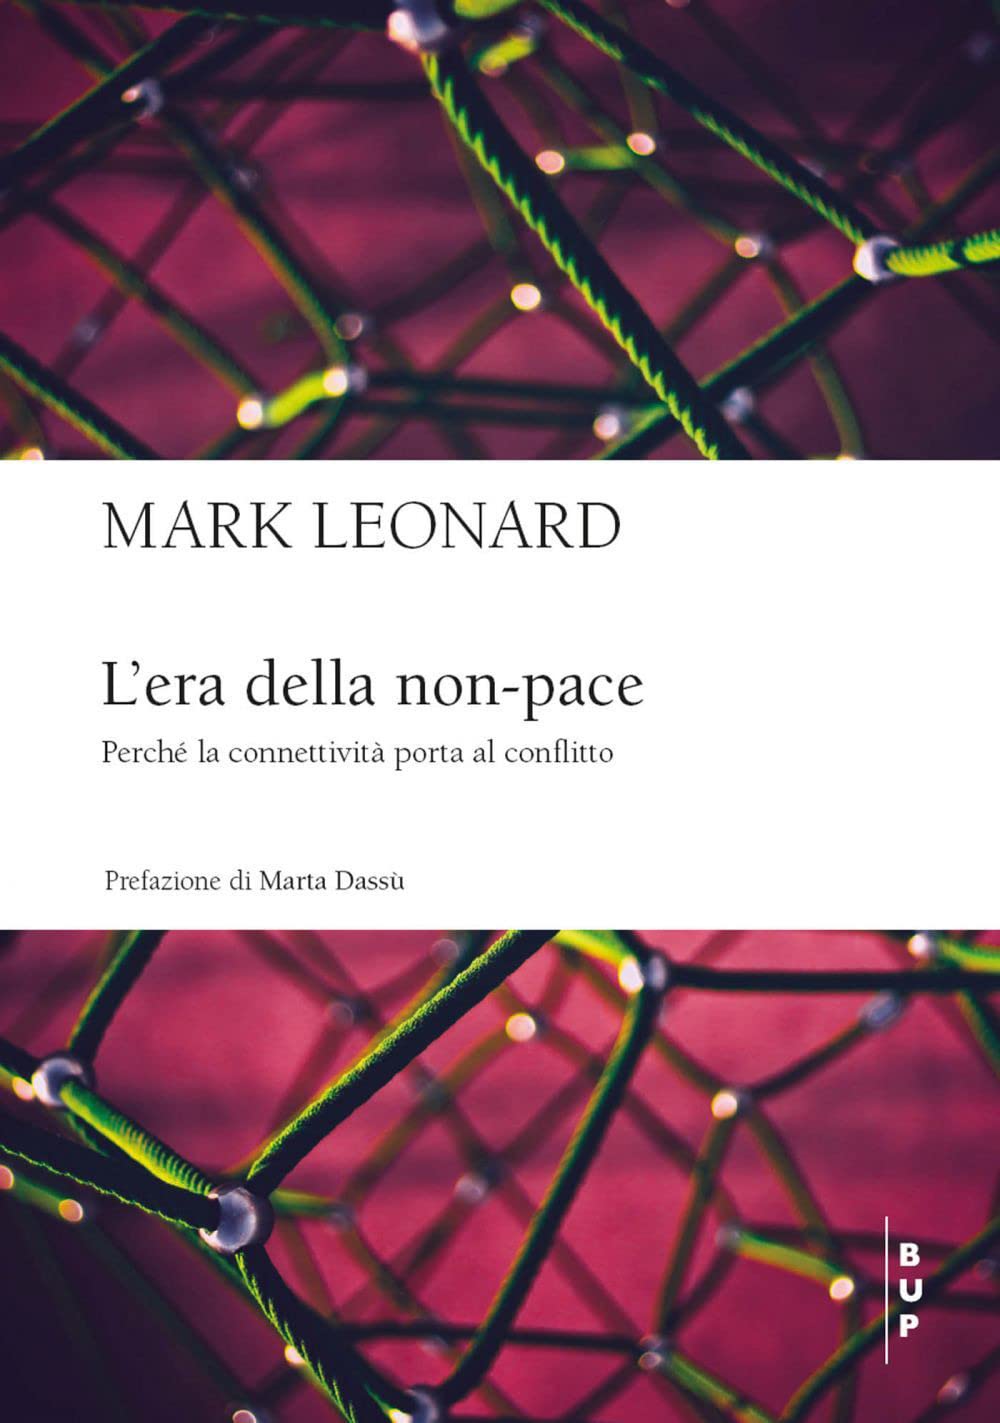 Mark Leonard: L'era della non-pace (Italiano language, Bocconi University Press)